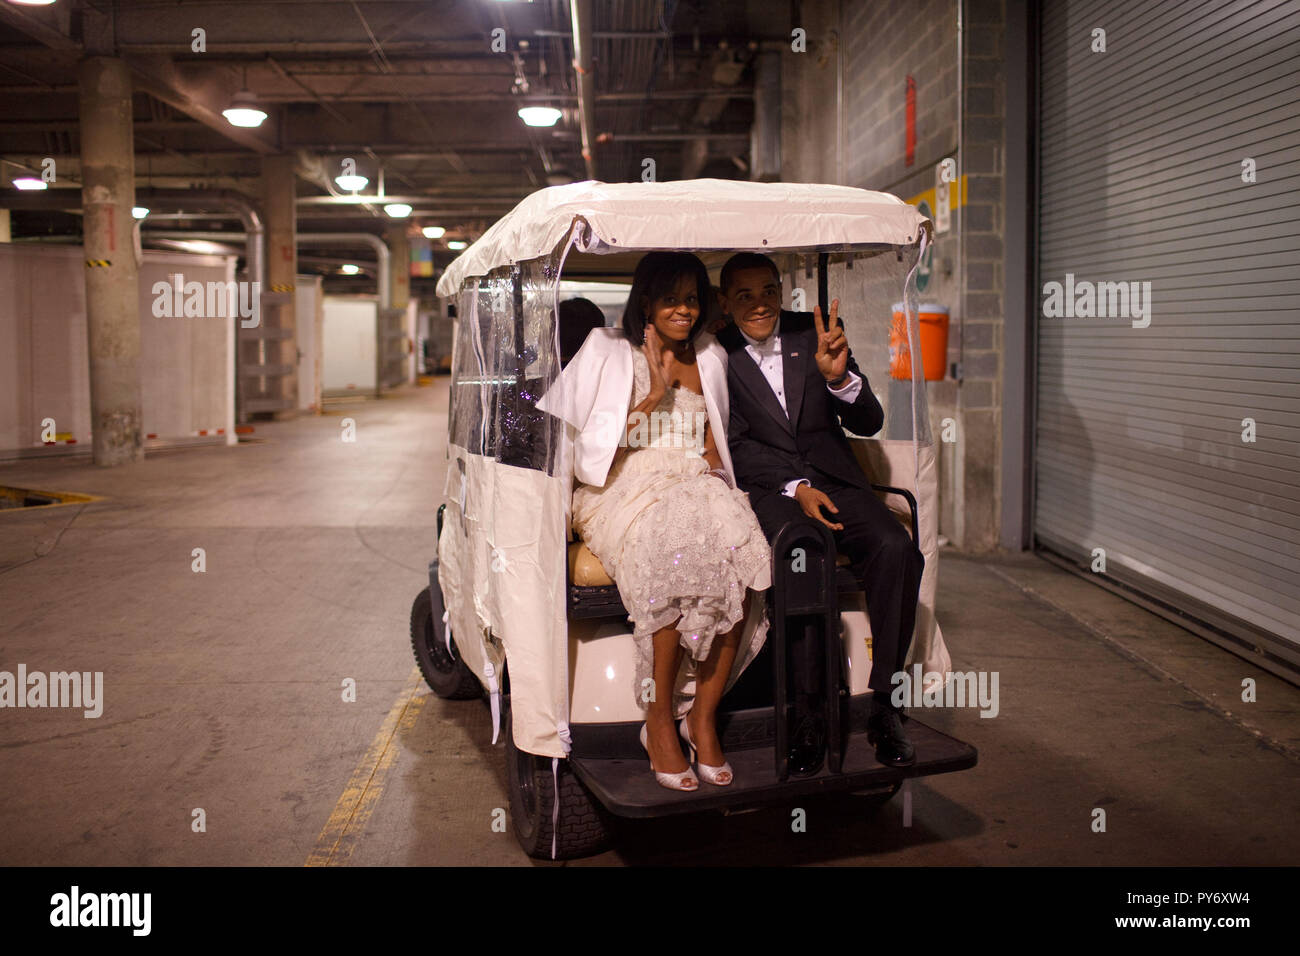 Le président Barack Obama et Première Dame Michelle Obama monter dans un chariot de golf une balle Inaugural 20/01/09 Photo Officiel de la Maison Blanche par Pete Souza Banque D'Images